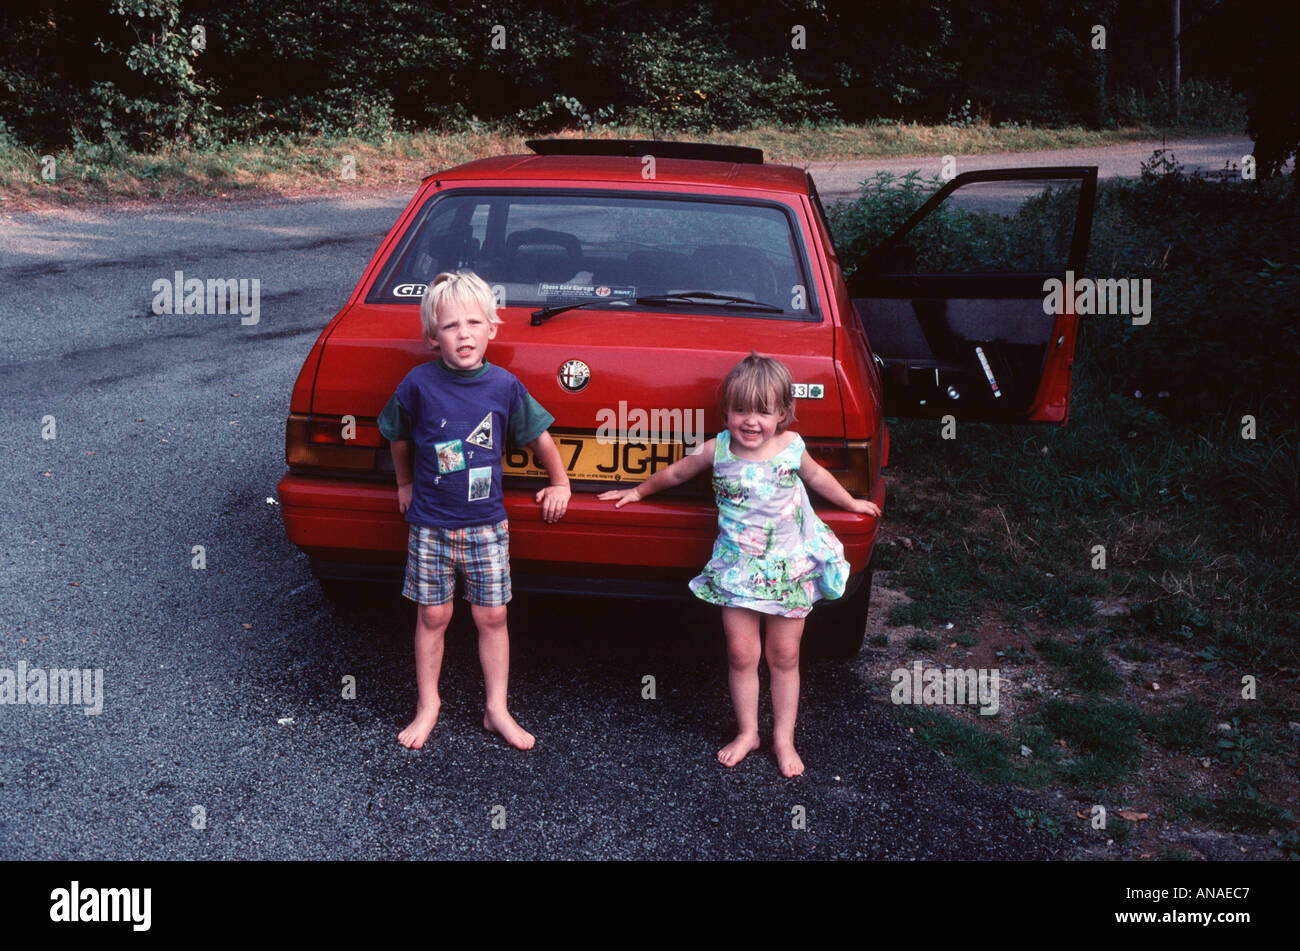 Deux petits enfants un garçon et une fille s'appuyer contre une voiture Alfa  Romeo rouge avec happy holiday smiles Photo Stock - Alamy